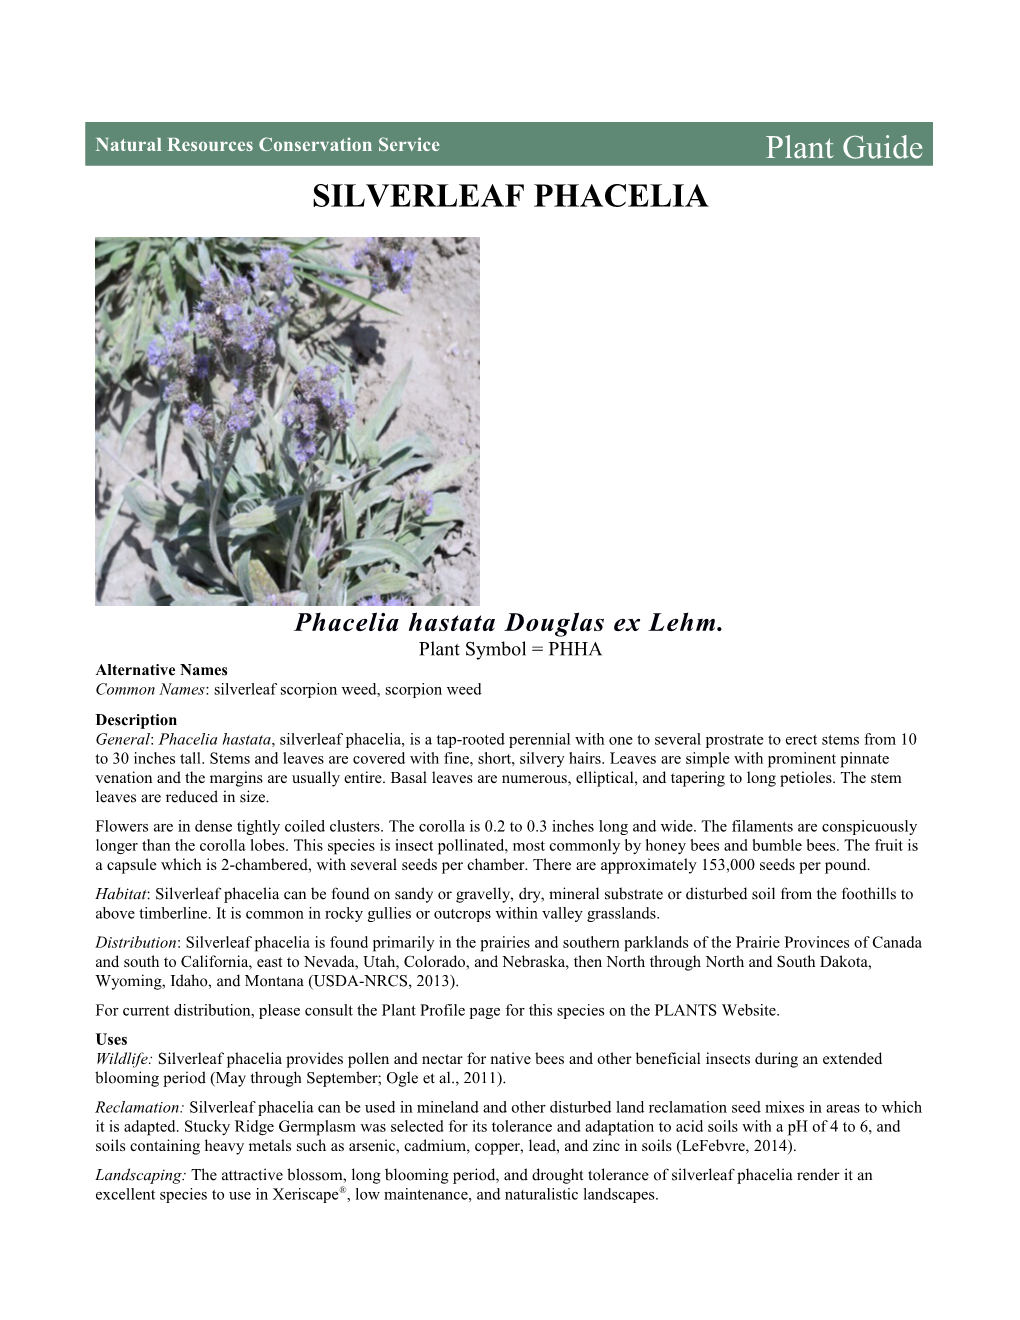 Silverleaf Phacelia (Phacelia Hastata) Plant Guide